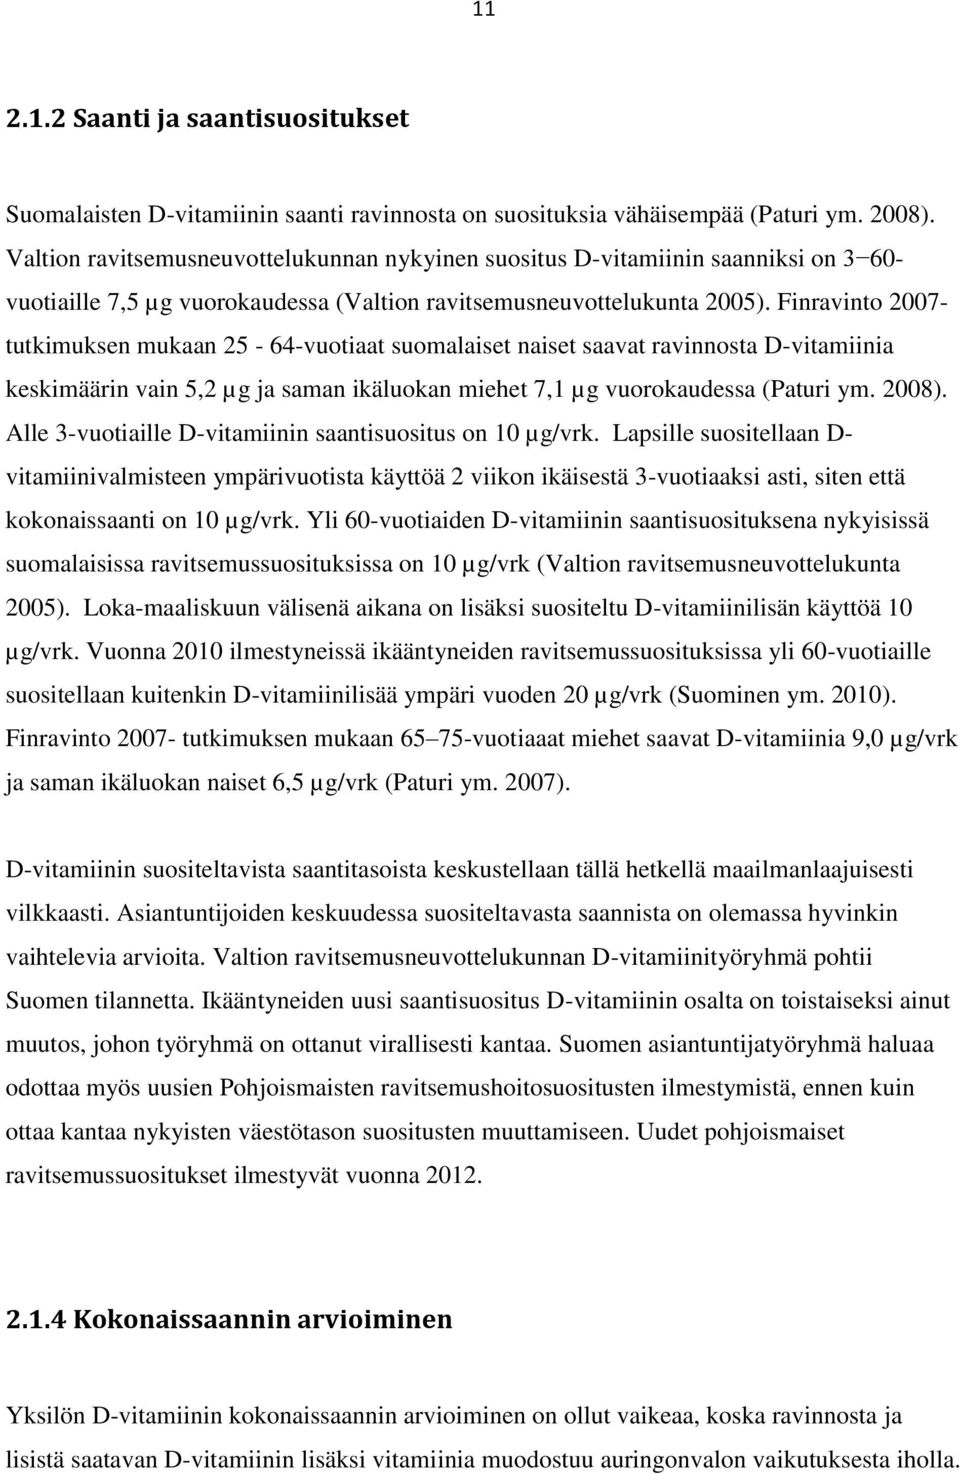 Finravinto 2007- tutkimuksen mukaan 25-64-vuotiaat suomalaiset naiset saavat ravinnosta D-vitamiinia keskimäärin vain 5,2 µg ja saman ikäluokan miehet 7,1 µg vuorokaudessa (Paturi ym. 2008).